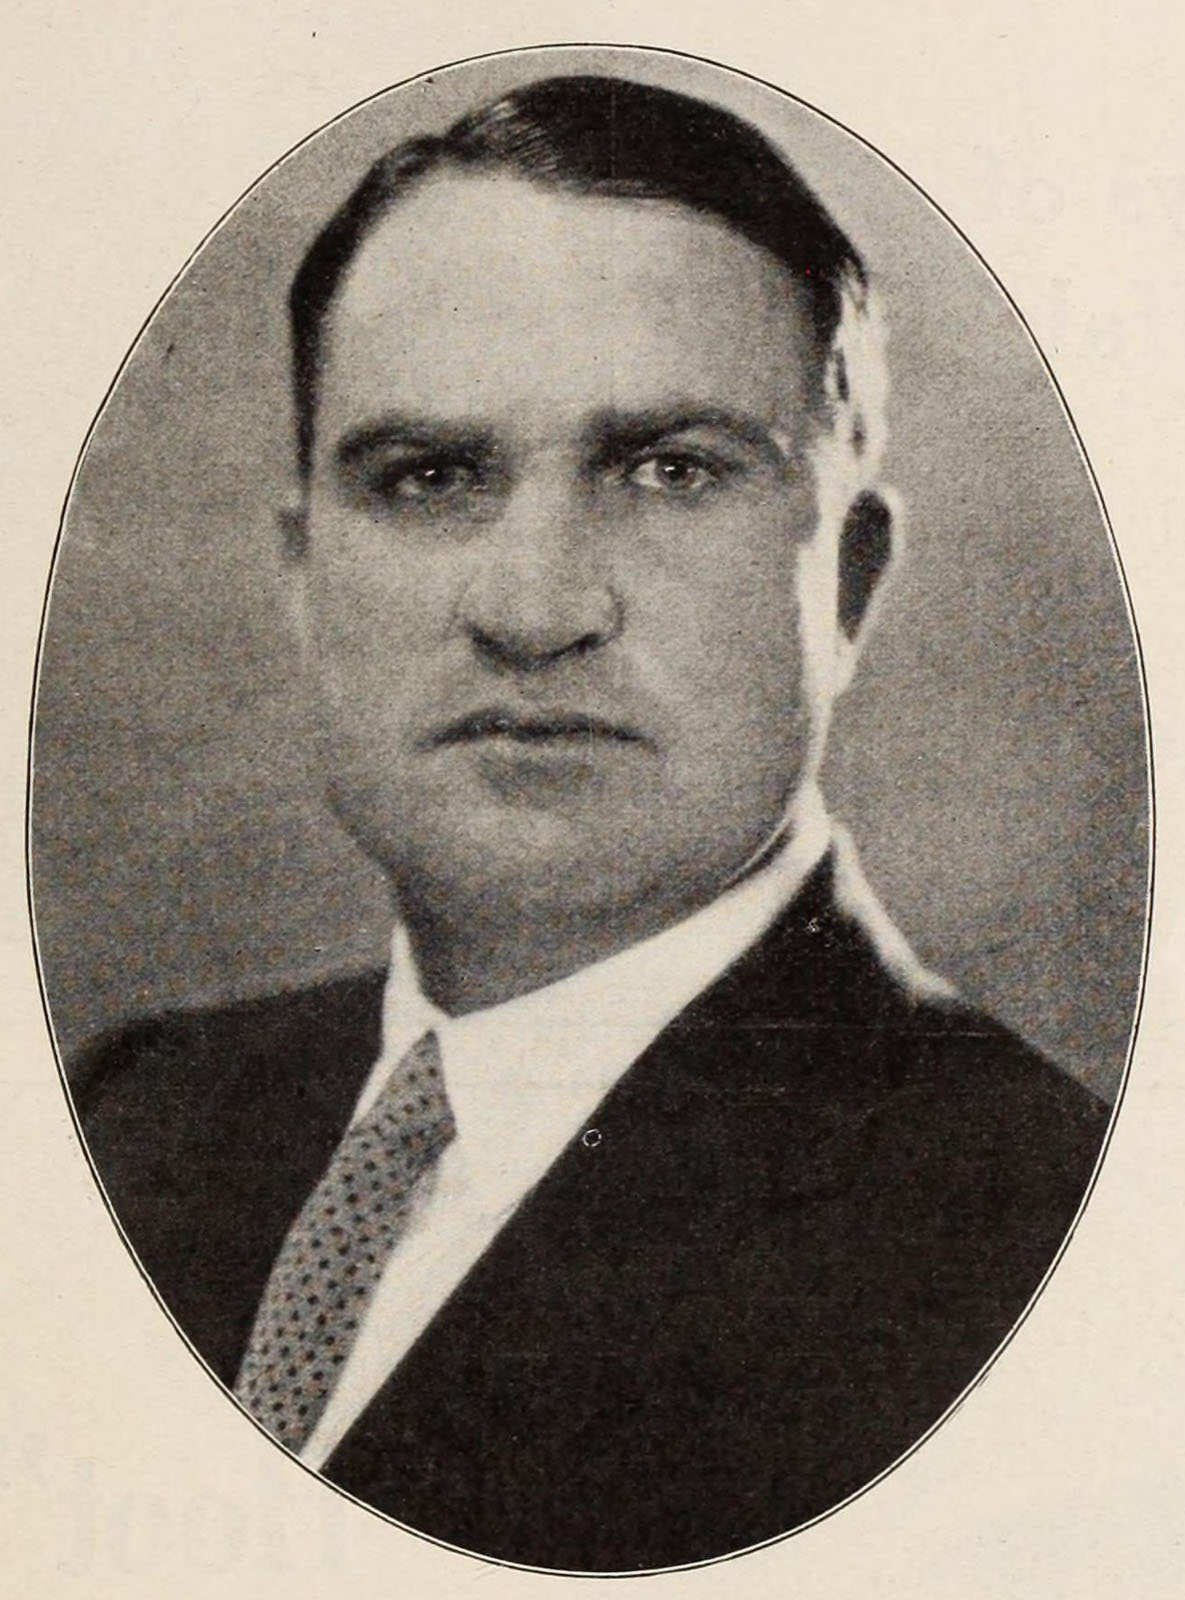 Edward F. Cline